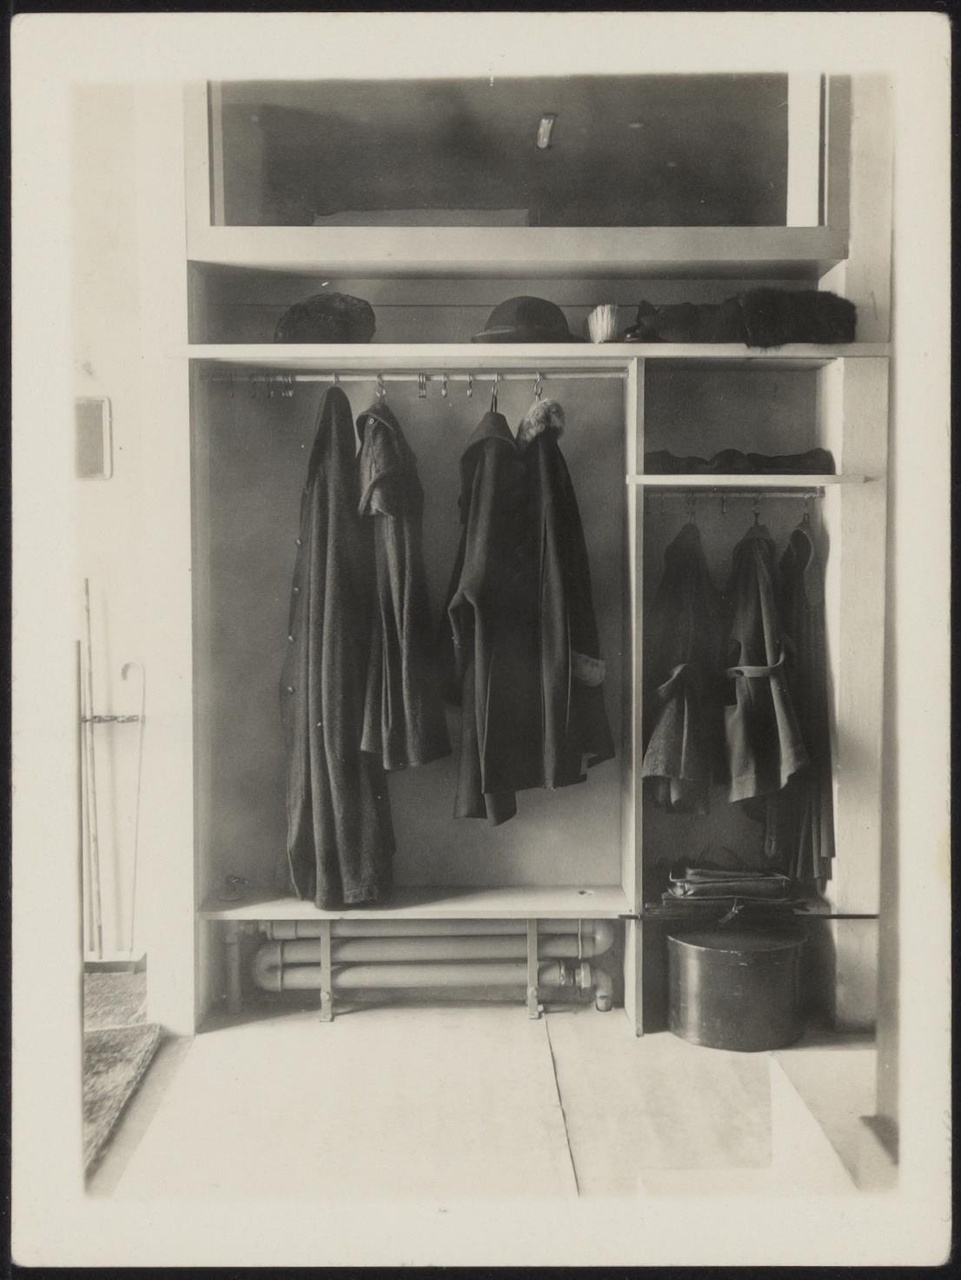 Afbeelding van Rietveld Schröderhuis - hal - kapstok met jassen en hoedendoos